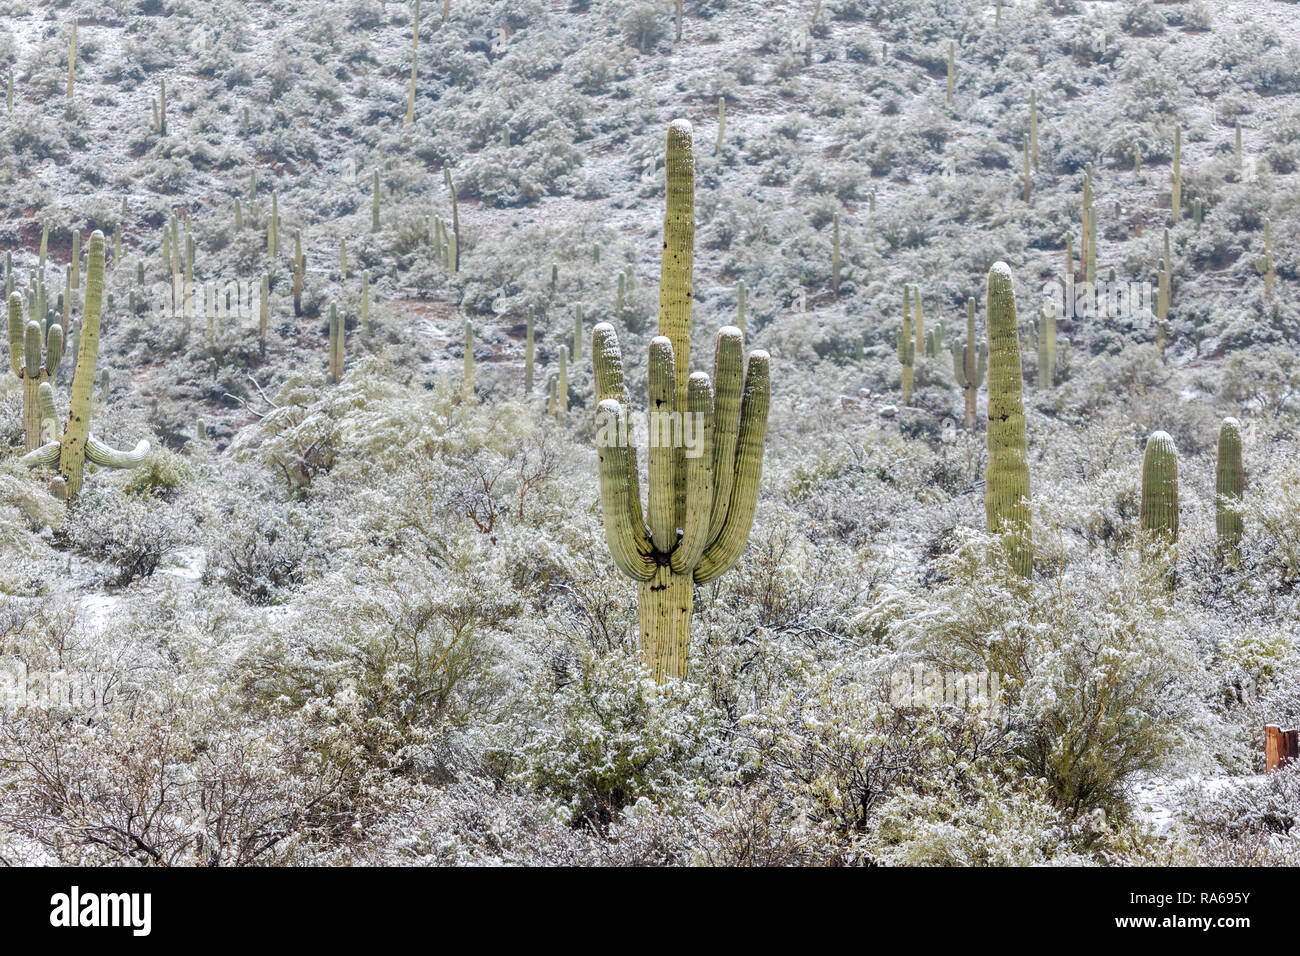 La neve cade nel deserto dell'Arizona a nord di Phoenix come una tempesta invernale fredda si è mosso attraverso l'area in Bumble Bee, Arizona, Stati Uniti Foto Stock